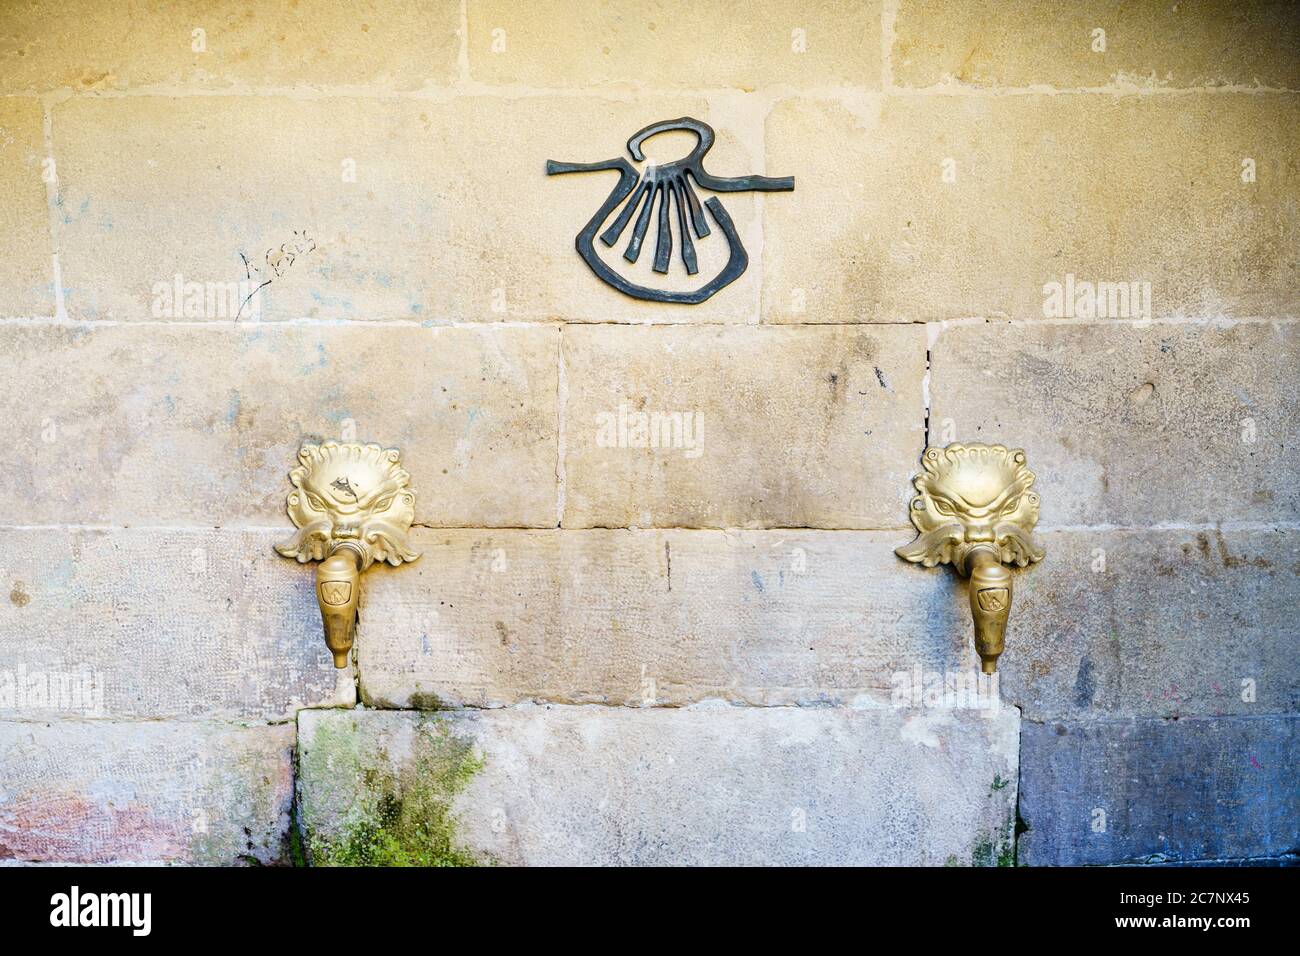 Hermoso tiro de Pilgrim Fuente dos golpecitos de león de oro y.. símbolo de concha de vieira negra en una pared de piedra Foto de stock